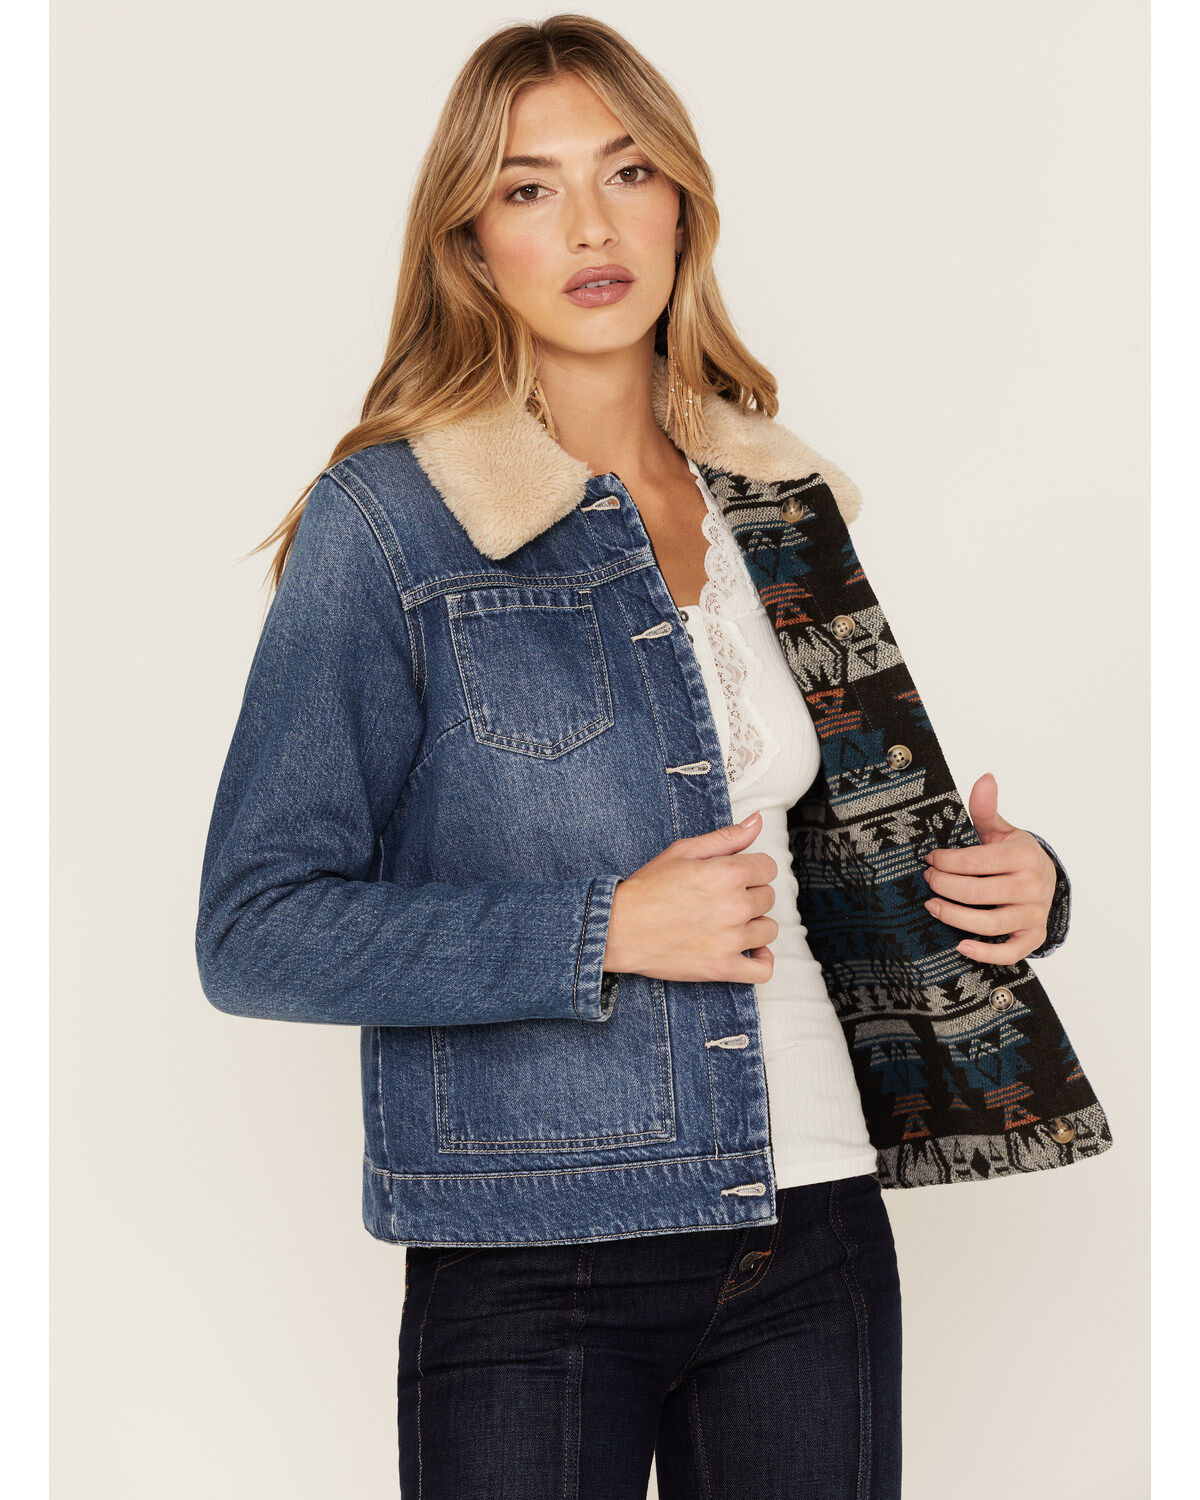 discount 84% WOMEN FASHION Jackets Blazer Jean Blue L Pepe Jeans Long denim striped blazer 